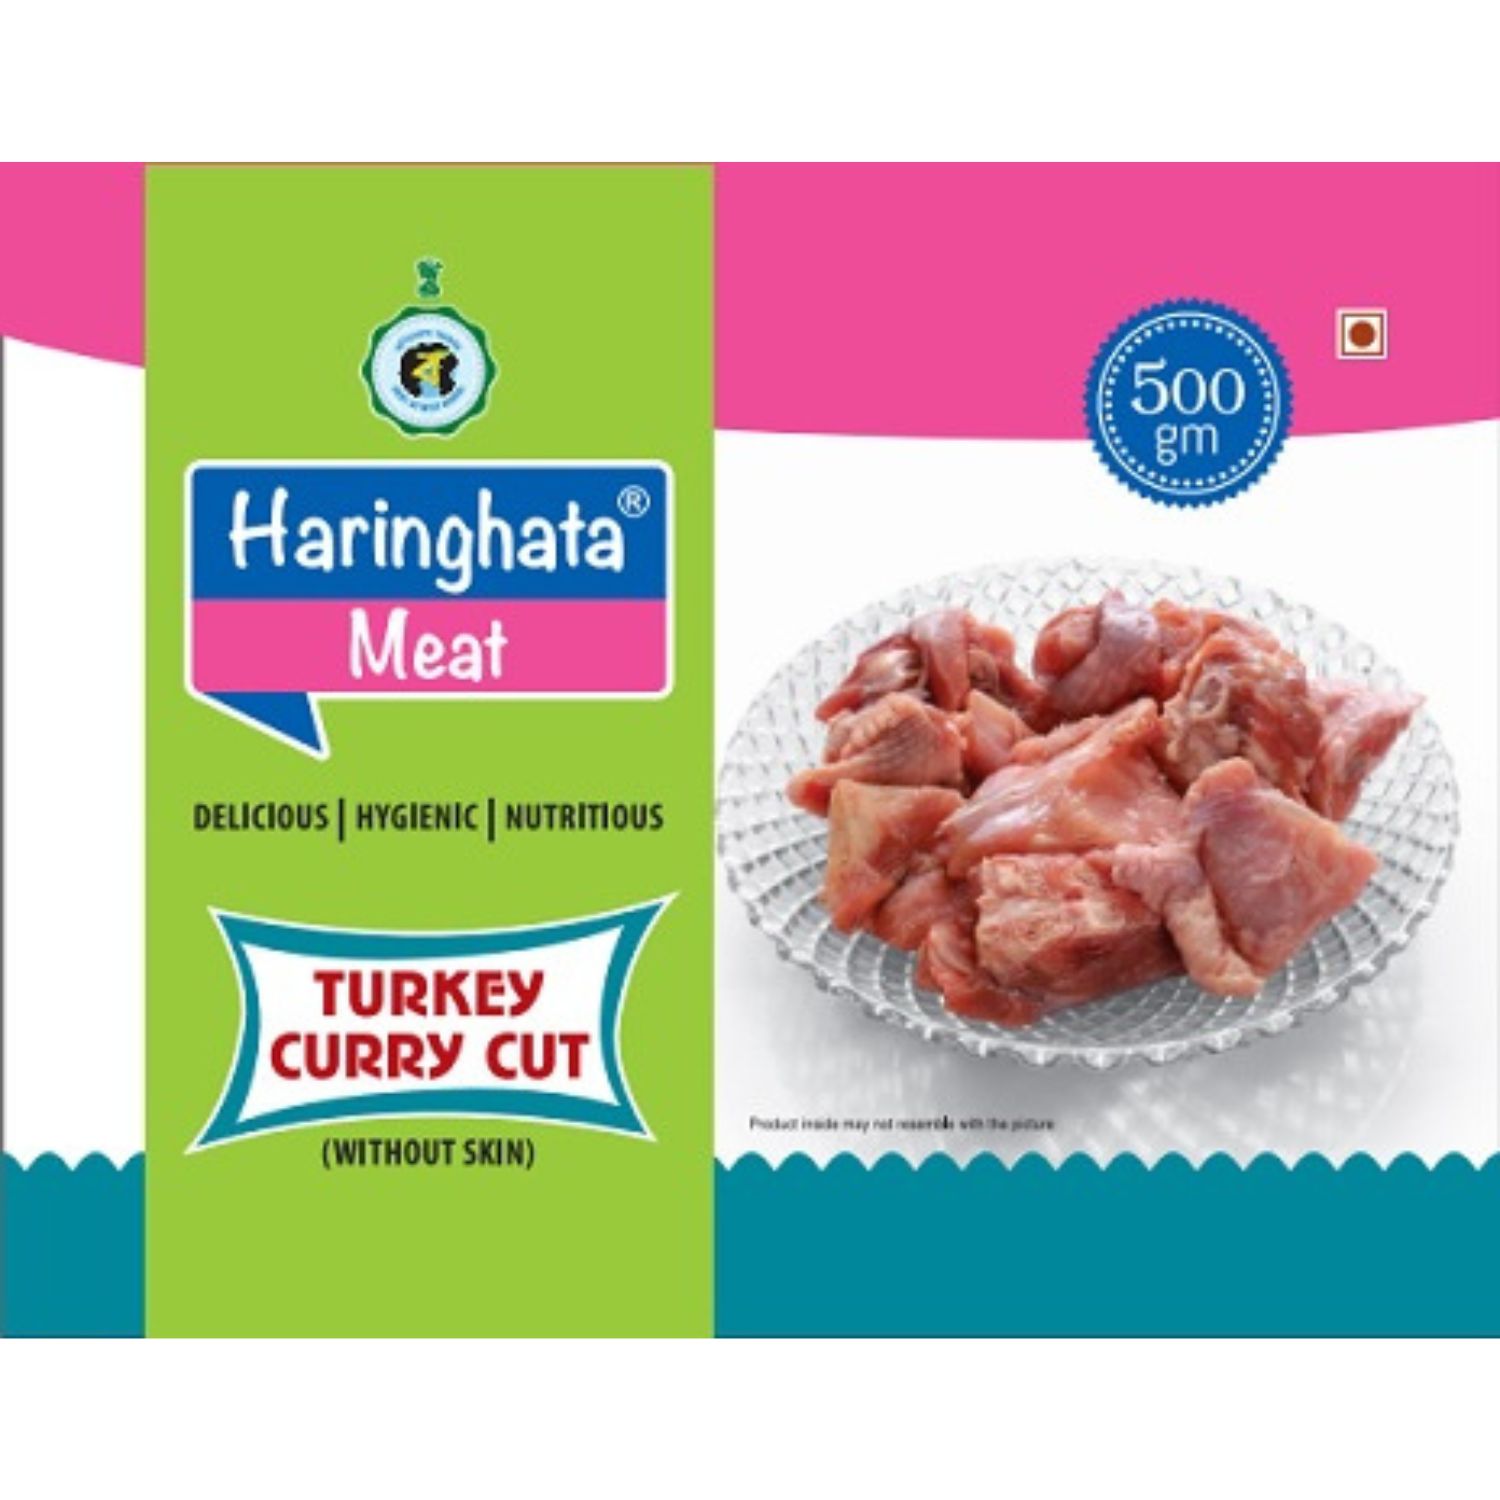 Haringhata Dressed Turkey Meat